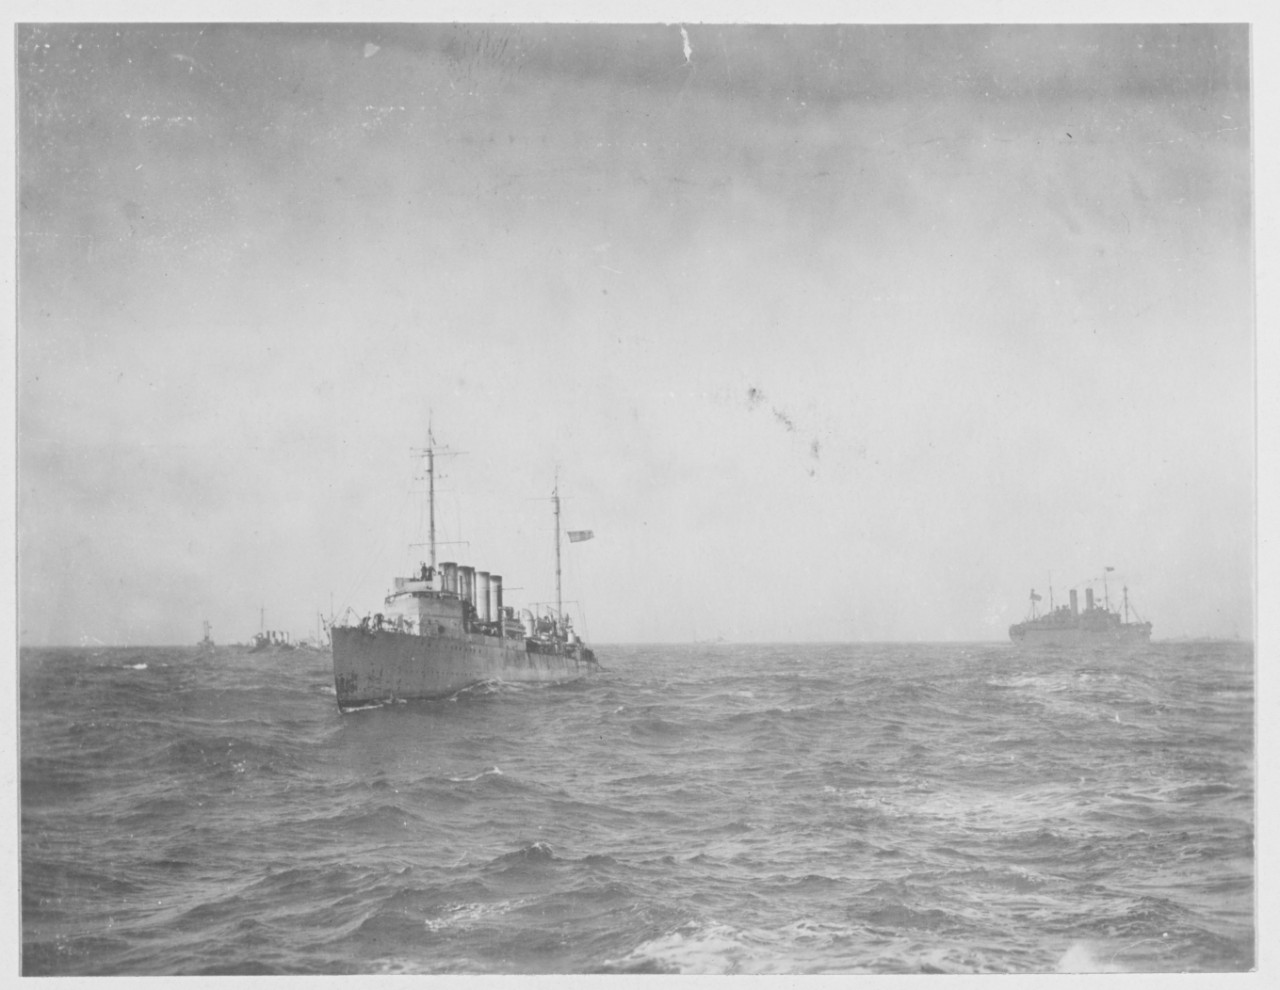 U.S. Destroyers entering Brest, France during World War I